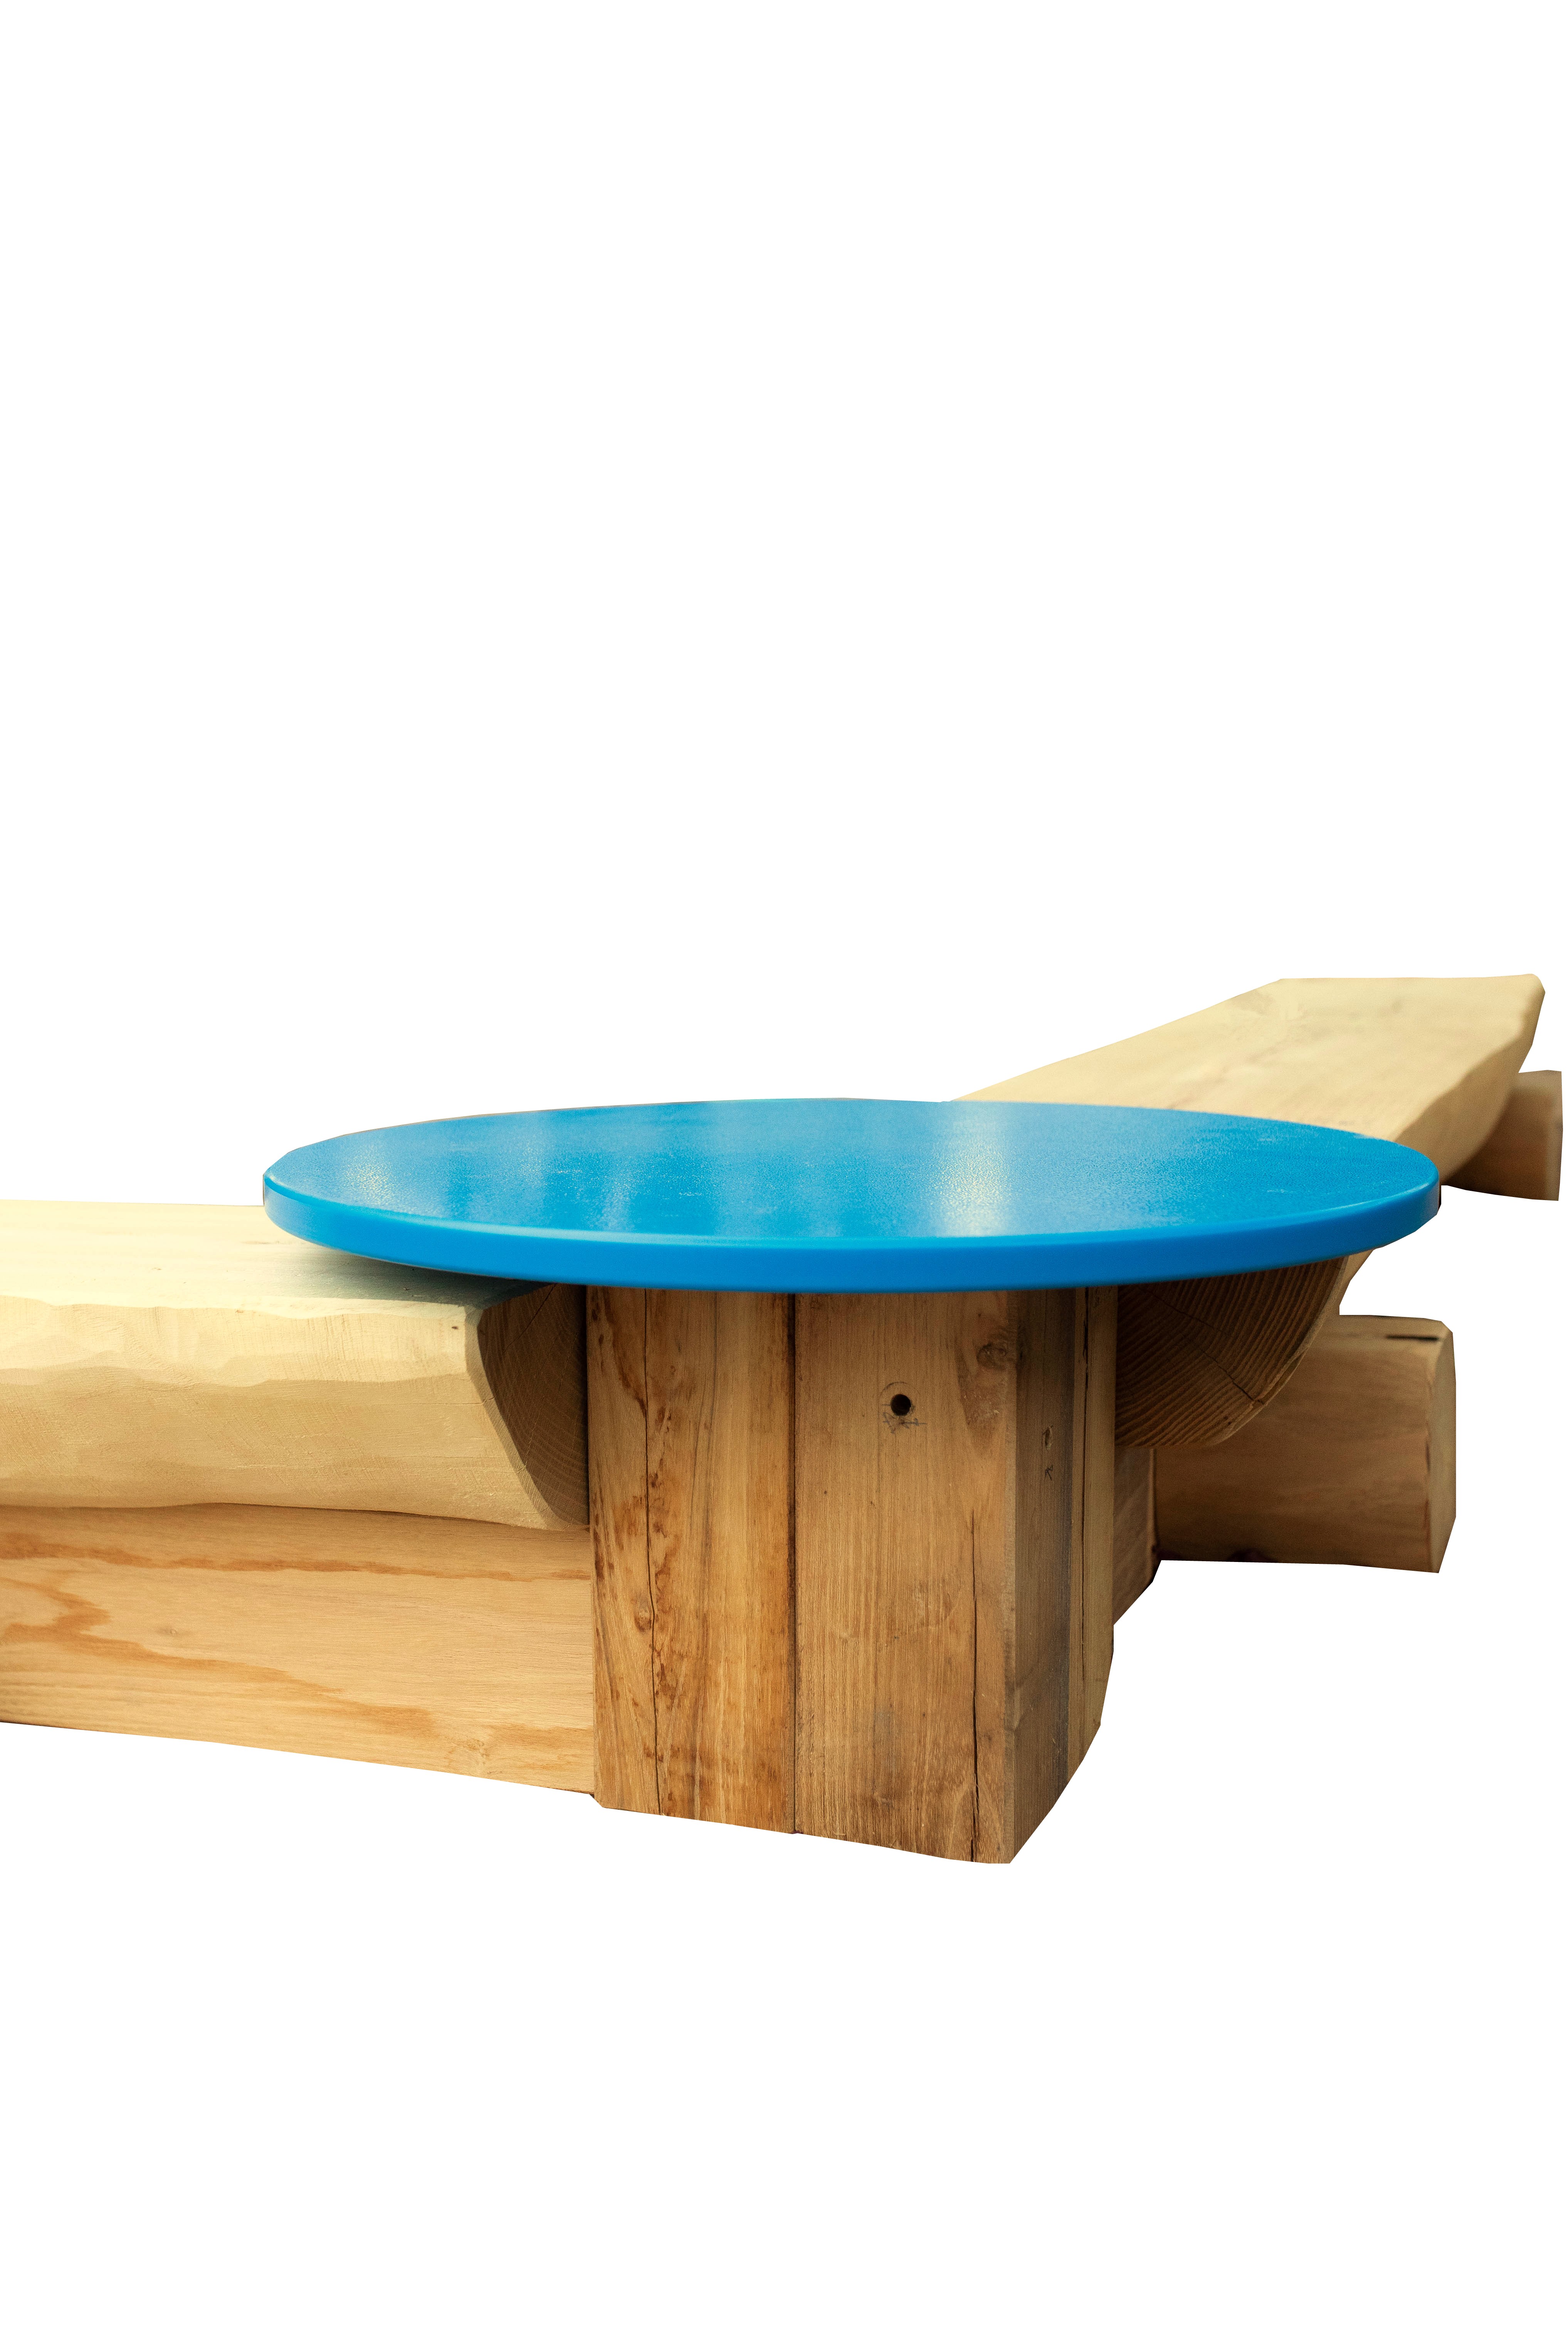 Sandkasten-Eckverbindung 90° mit Sandspieltisch, blau